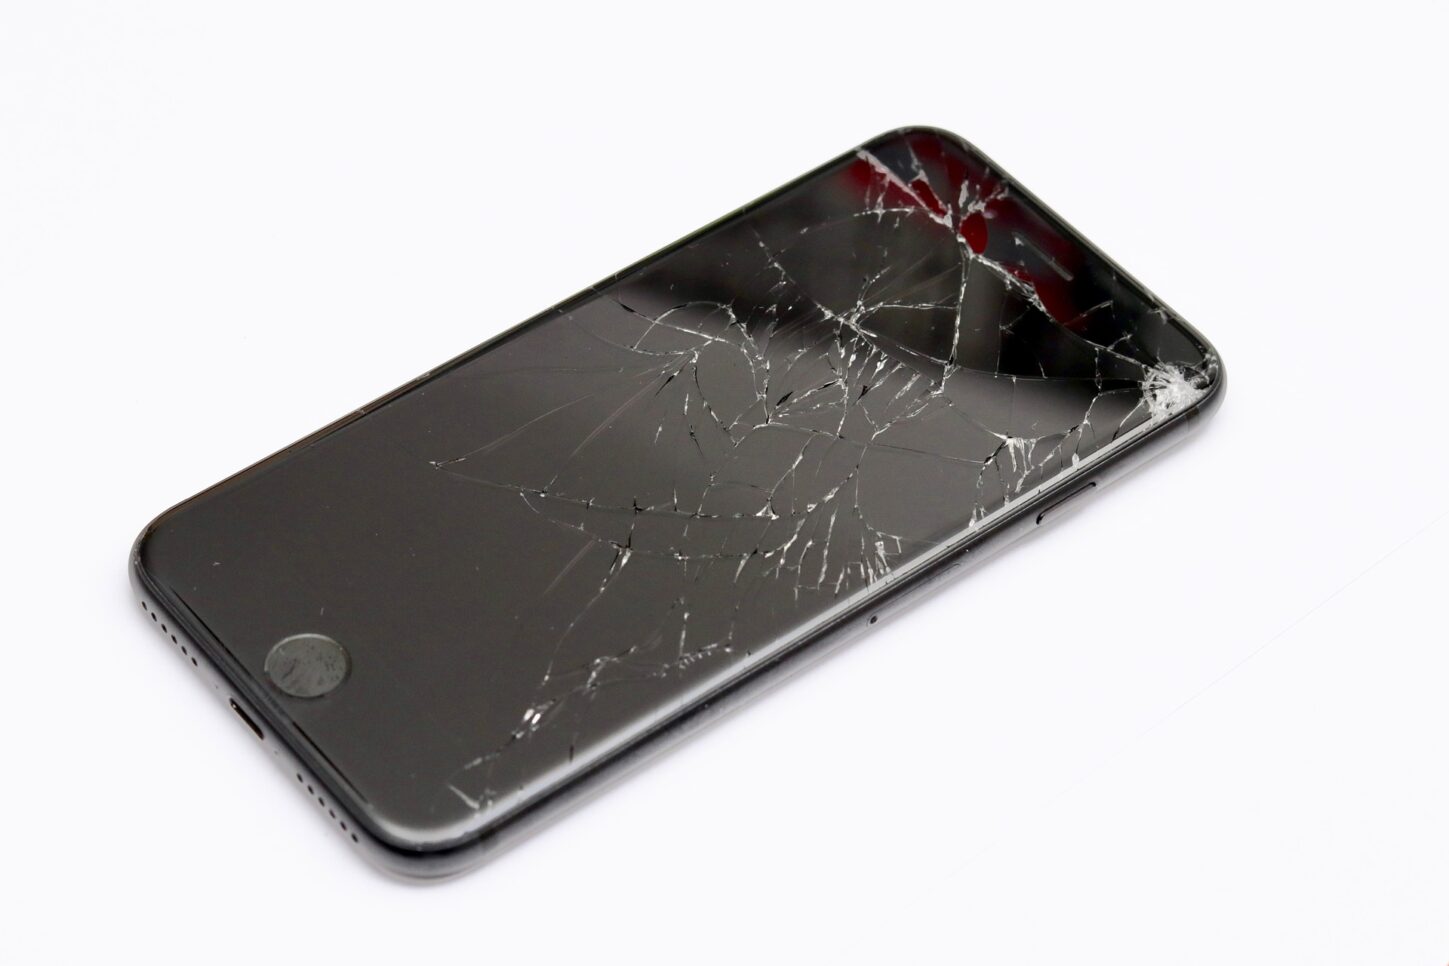 Iphoneの液晶画面はどうやって修理するの 割れたまま使って大丈夫